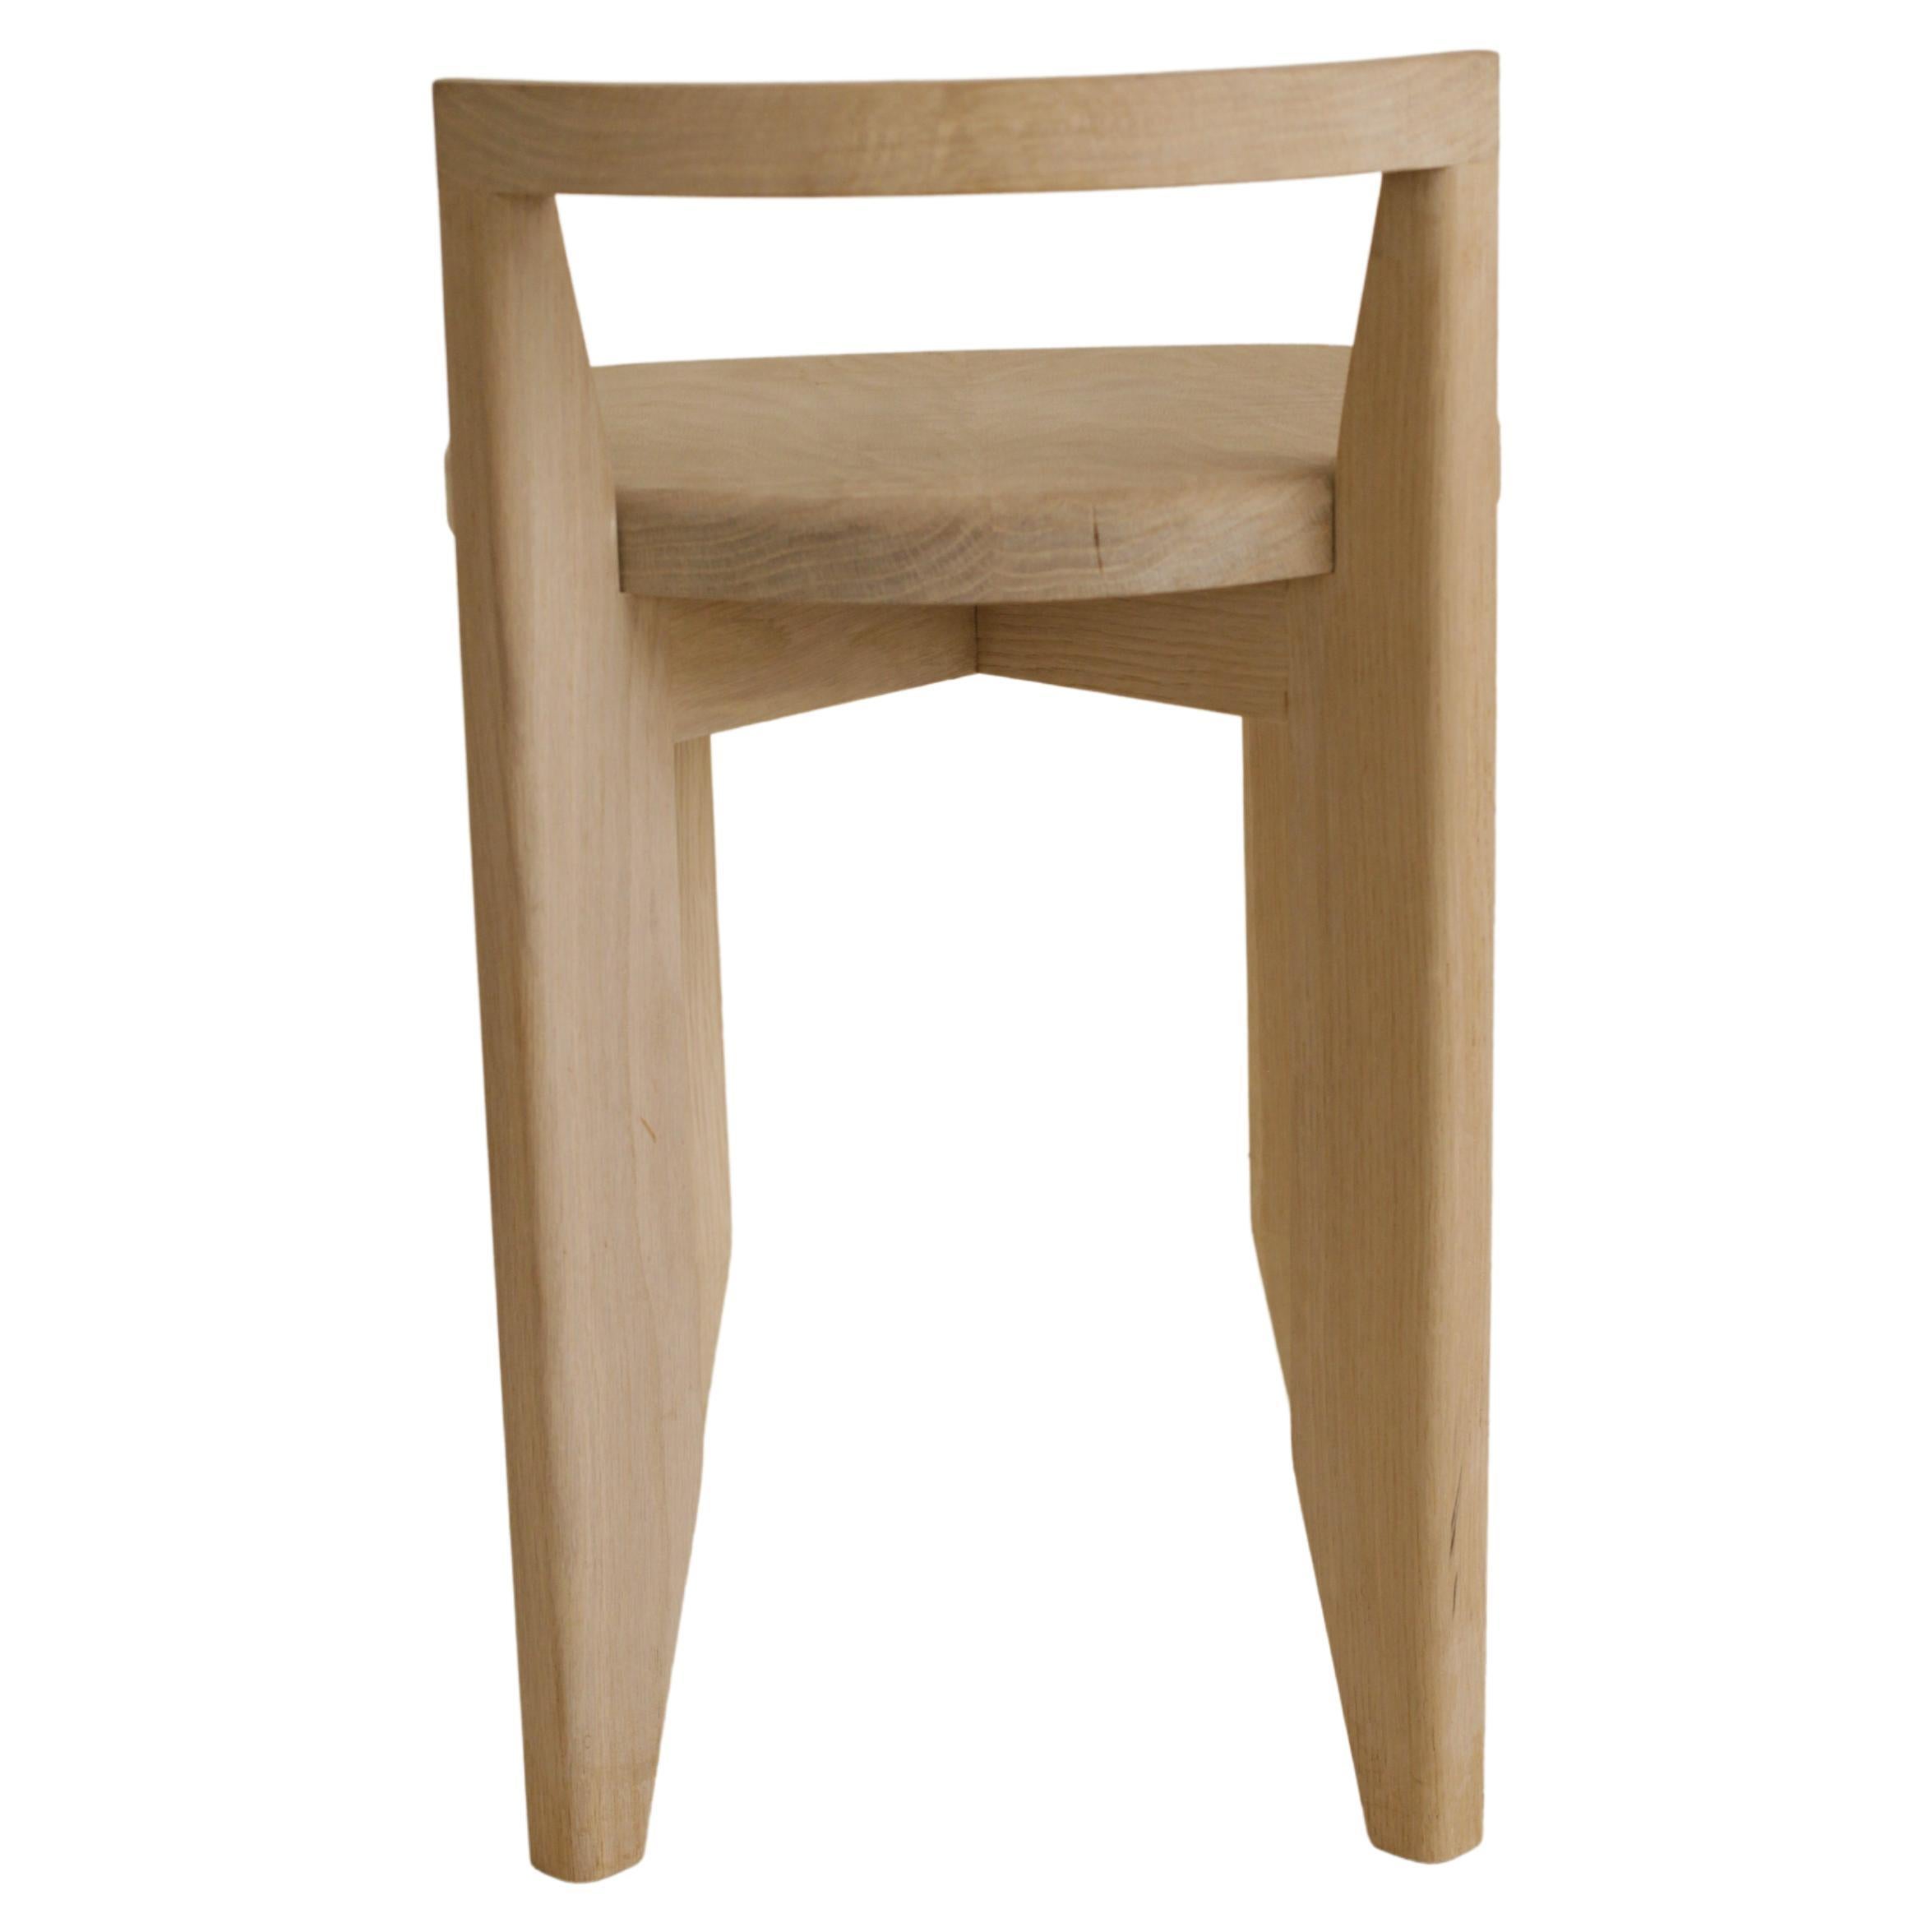 Cette chaise / tabouret à dossier bas en chêne massif a été inspirée par une chaise rembourrée de Pierre Chapo et a été réalisée à l'origine comme cadeau pour mon partenaire. J'aime le poids visuel conféré par l'épaisseur et la taille de l'assise,